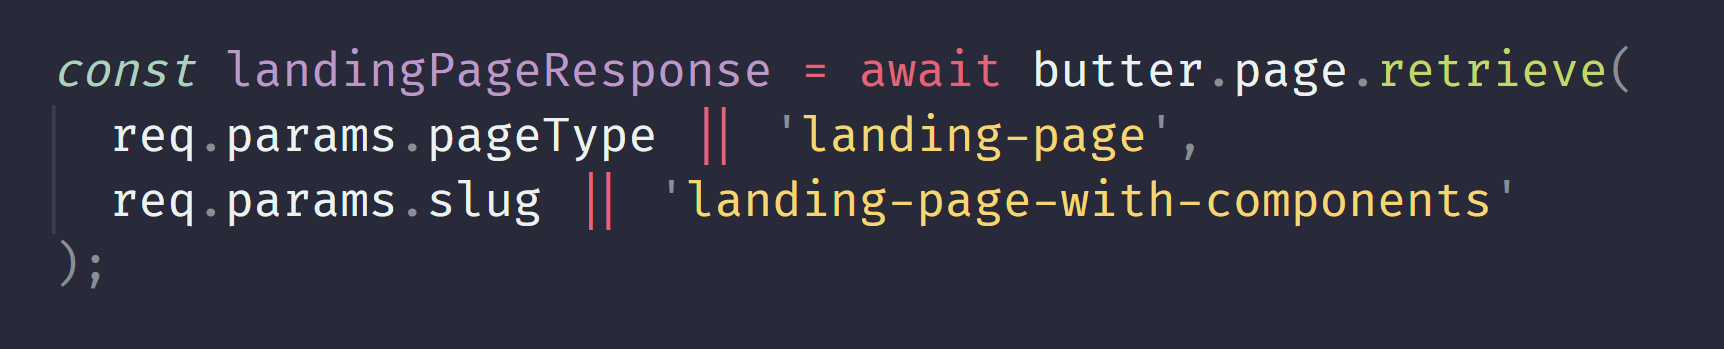 landingPageResponse code snippet